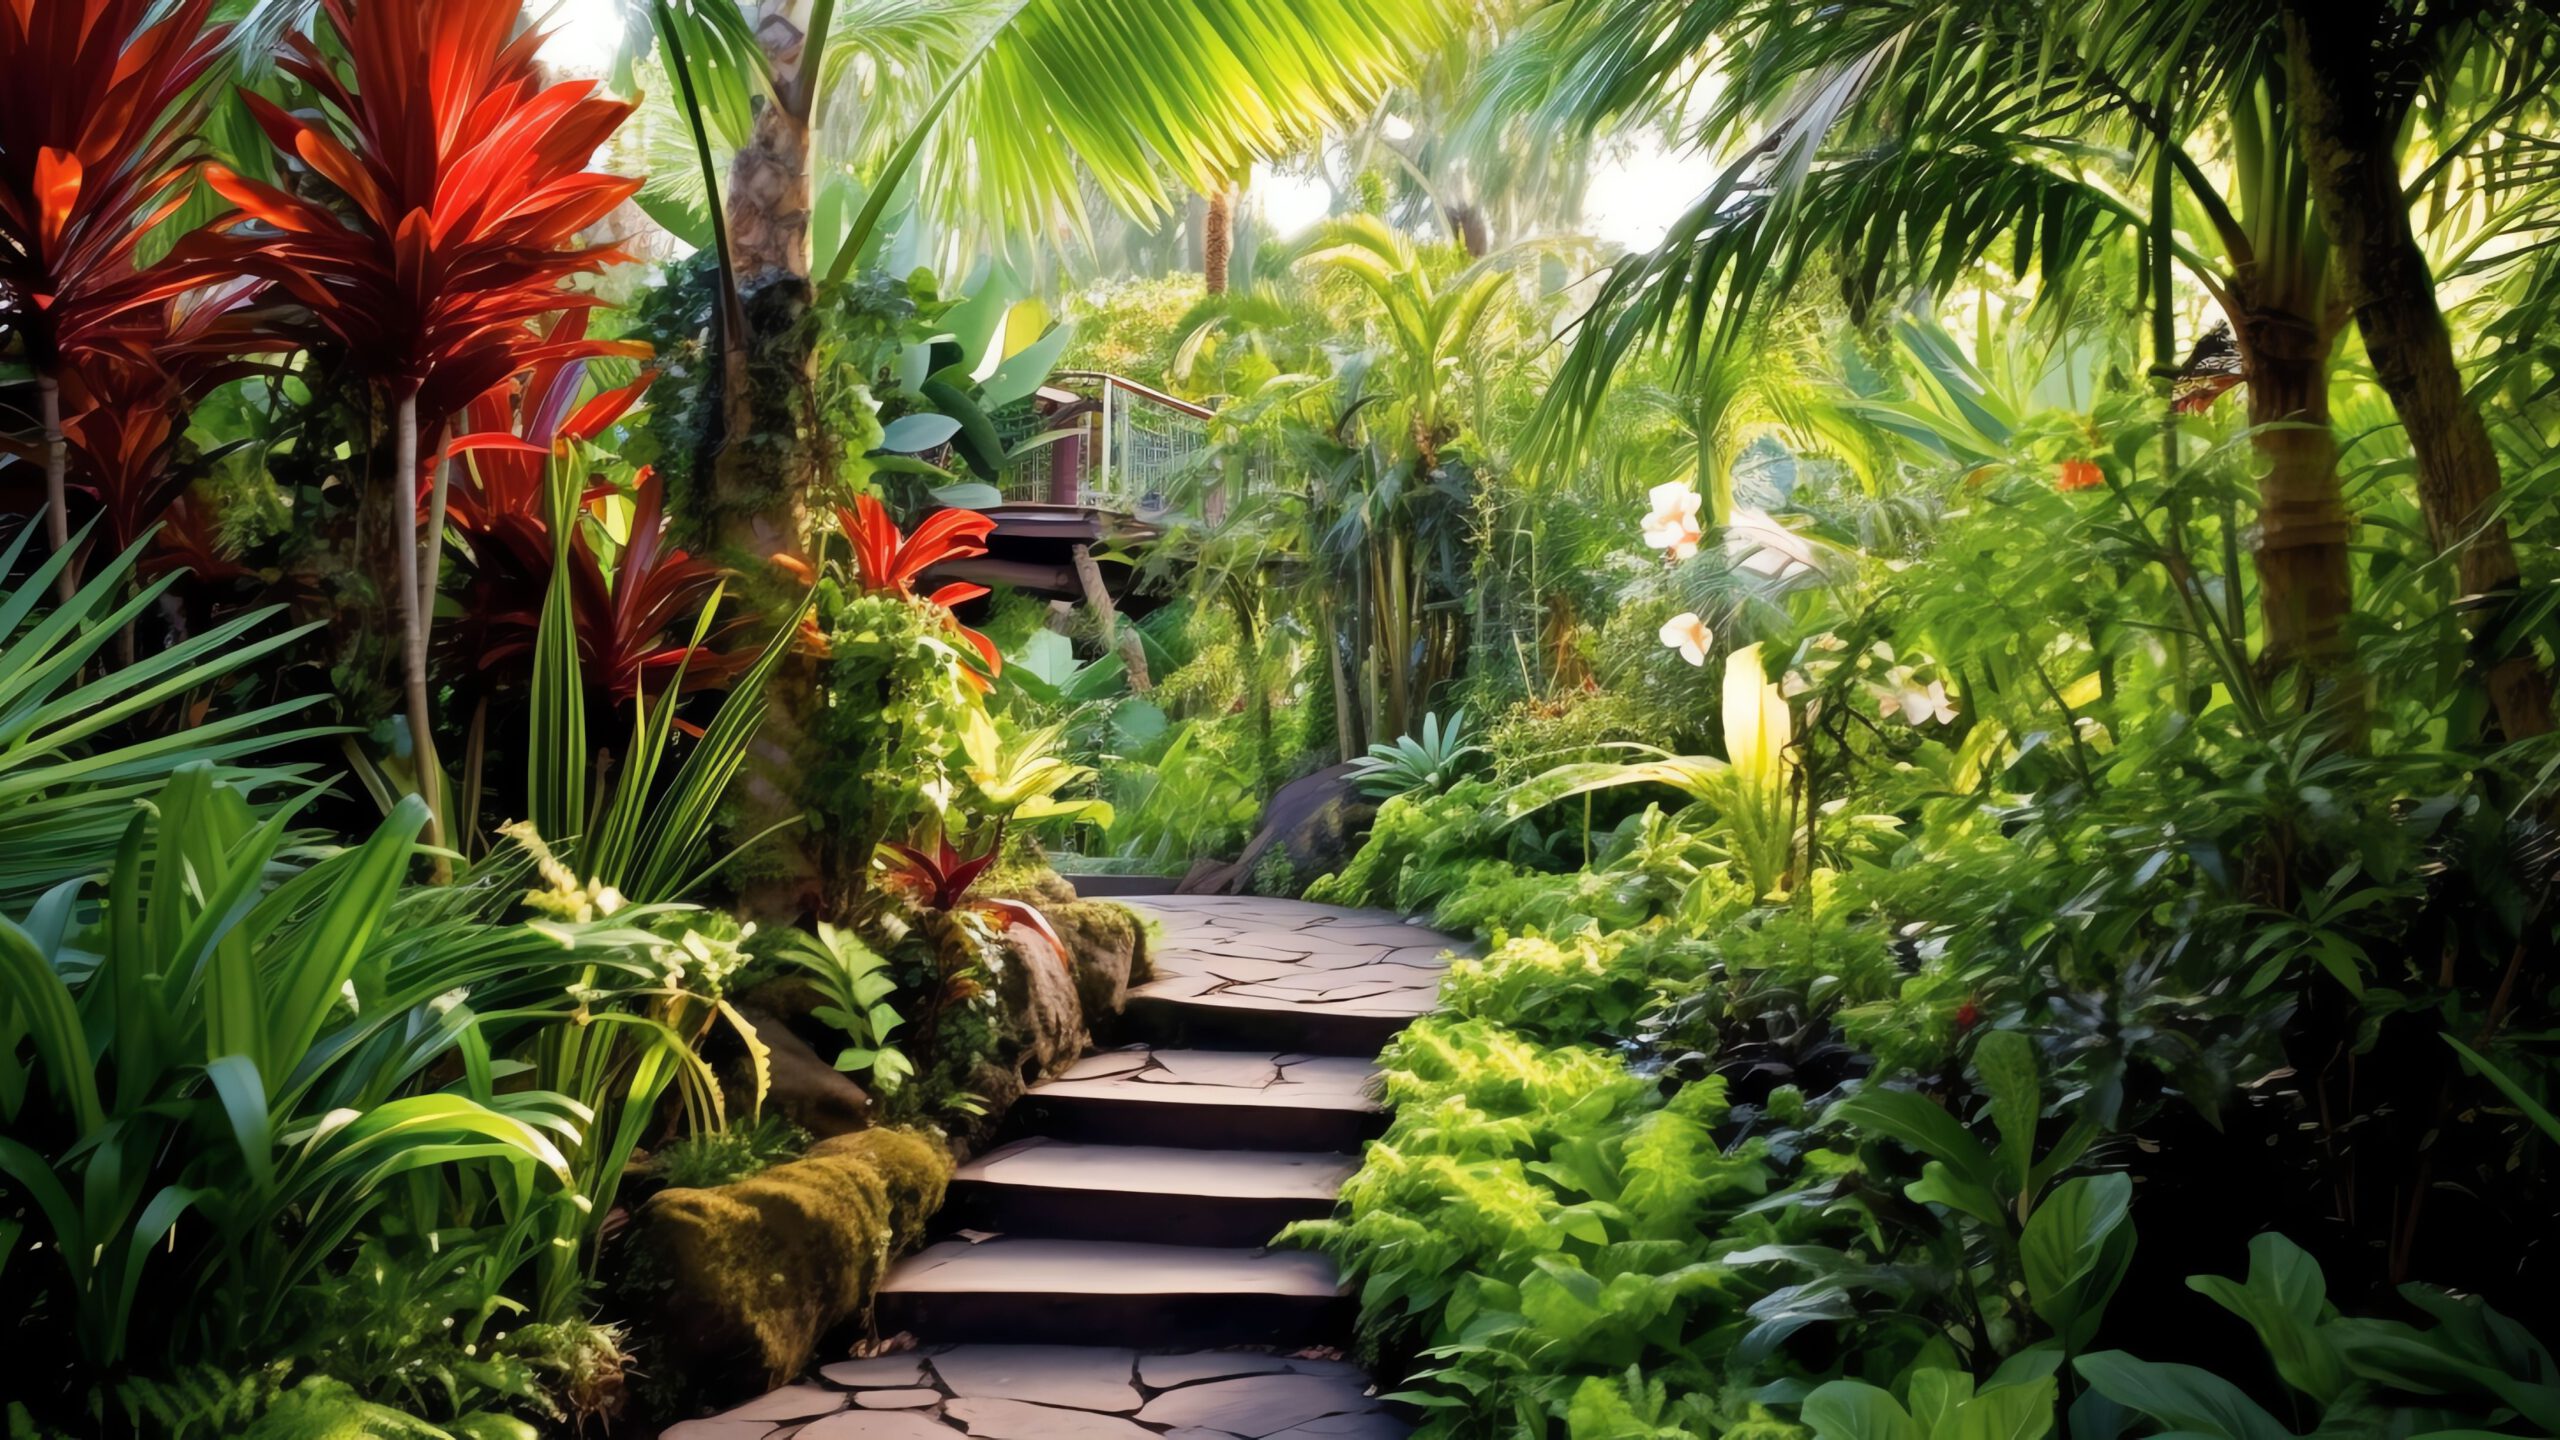 Na tym wspaniałym obrazku widzimy niesamowity ogród w stylu tropikalnym, z bujną roślinnością, kolorowymi kwiatami i egzotycznymi drzewami, tworzący rajskie zakątki w sercu natury